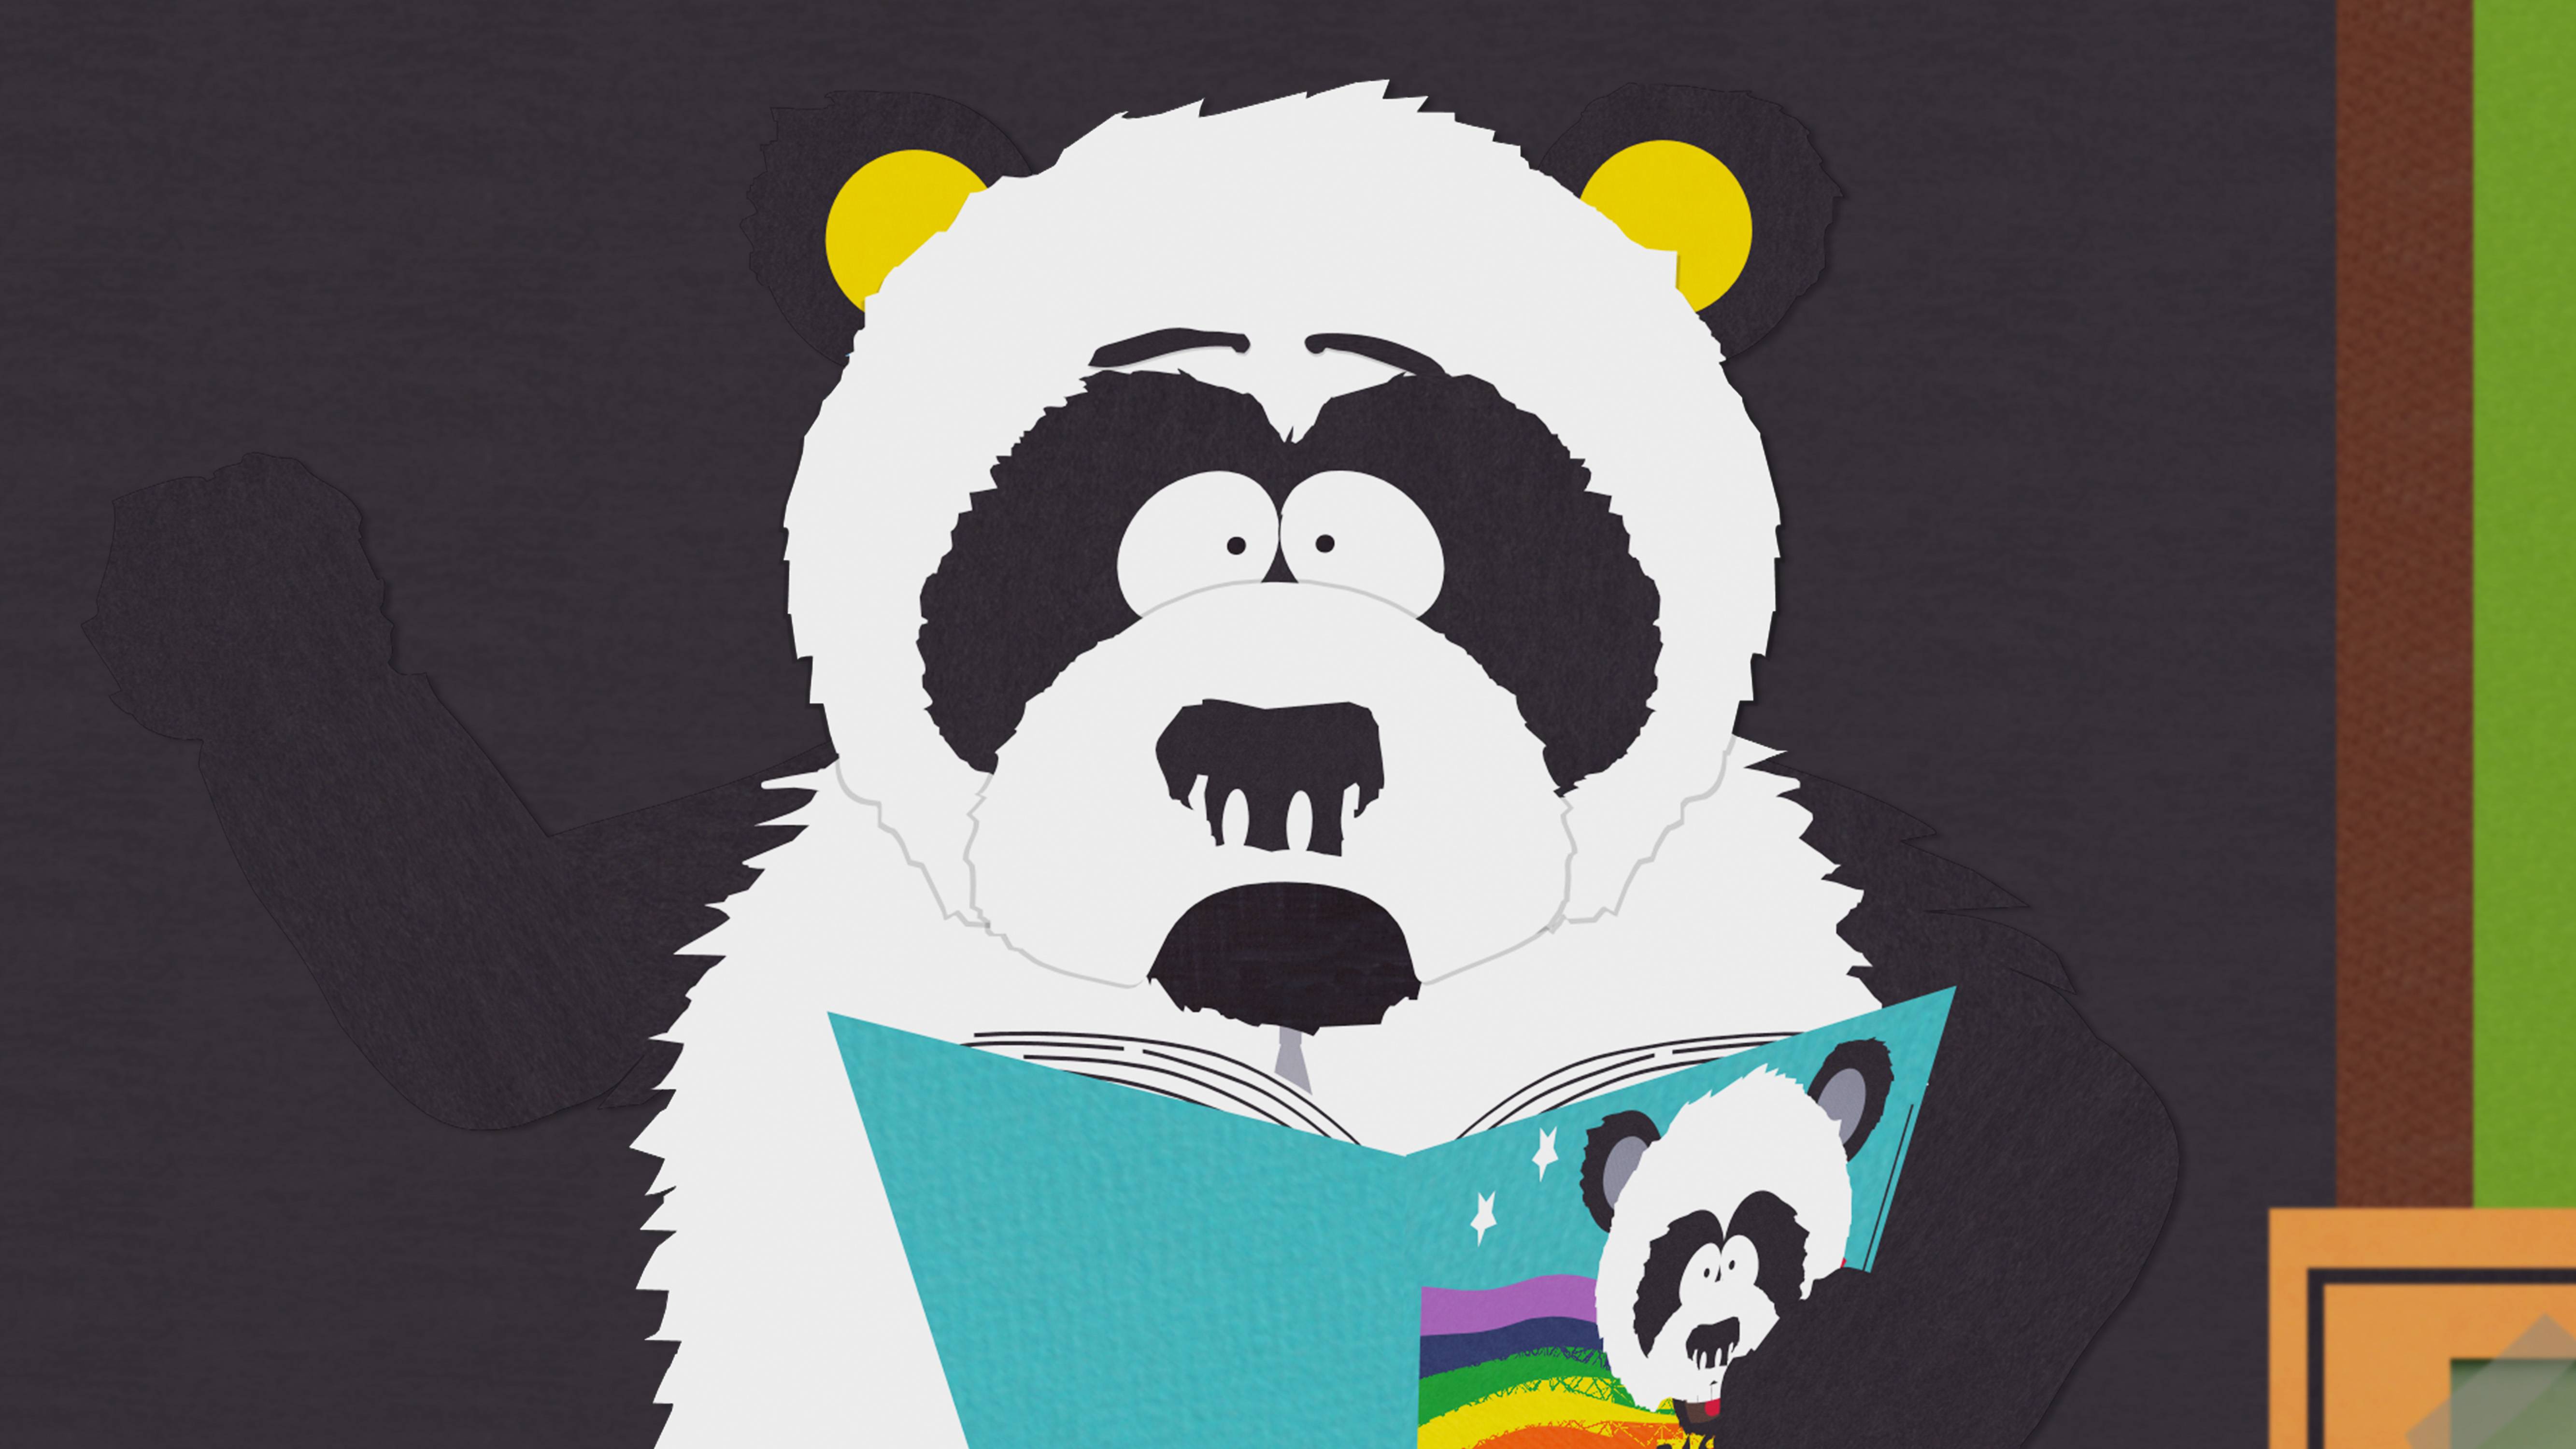 La libido del oso panda y su escasa actividad sexual - The New